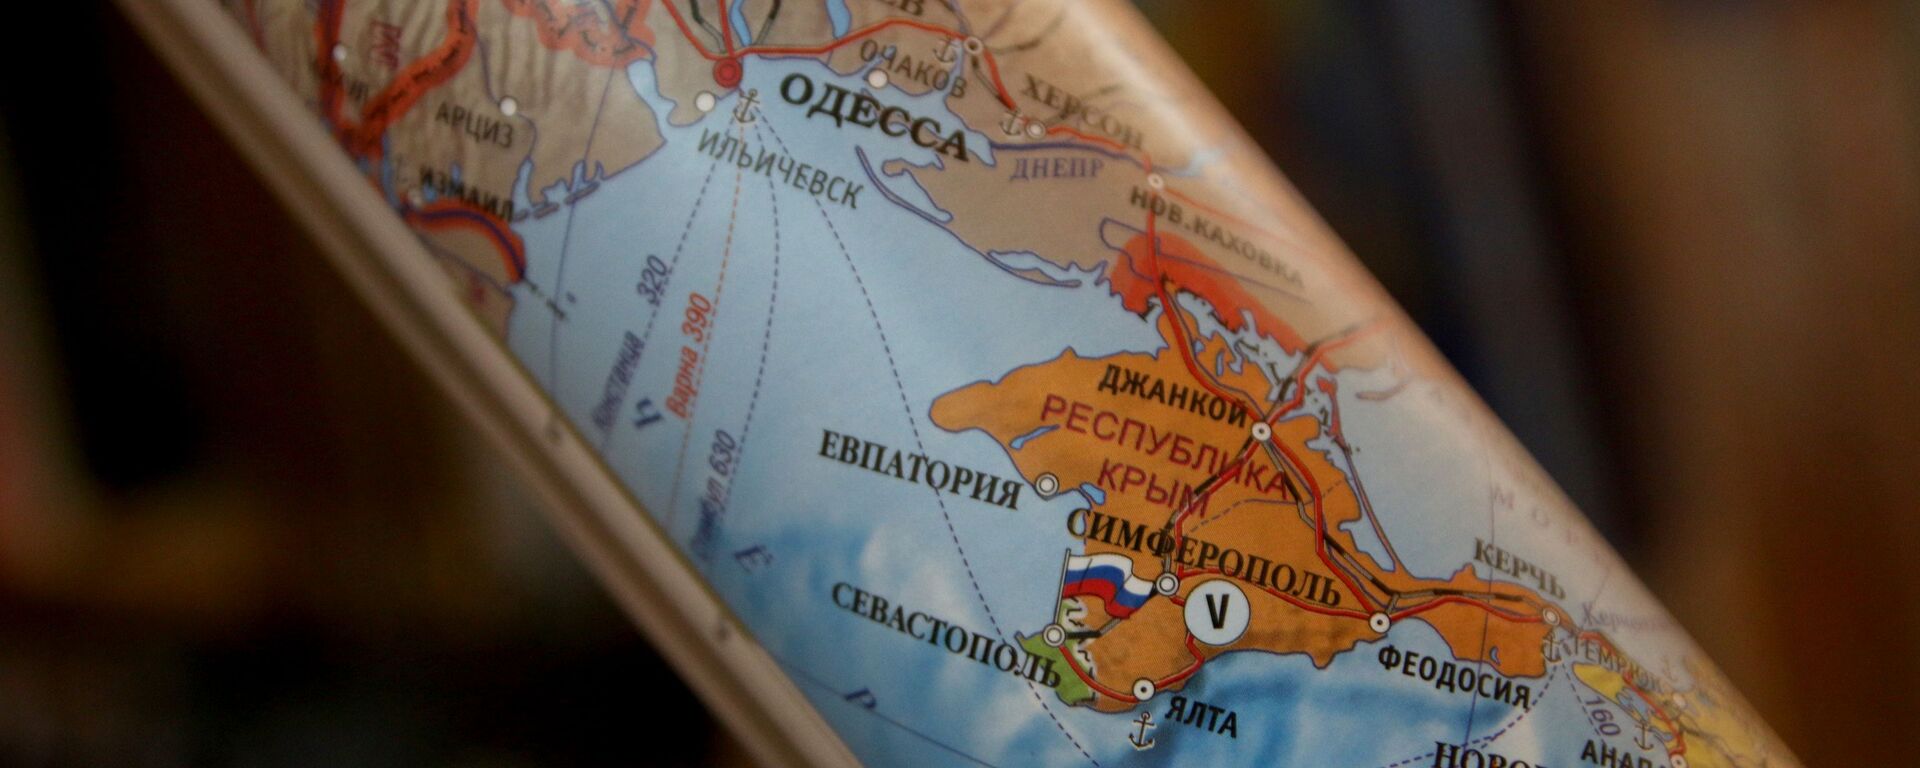 Крым на карте - Sputnik Latvija, 1920, 22.08.2021